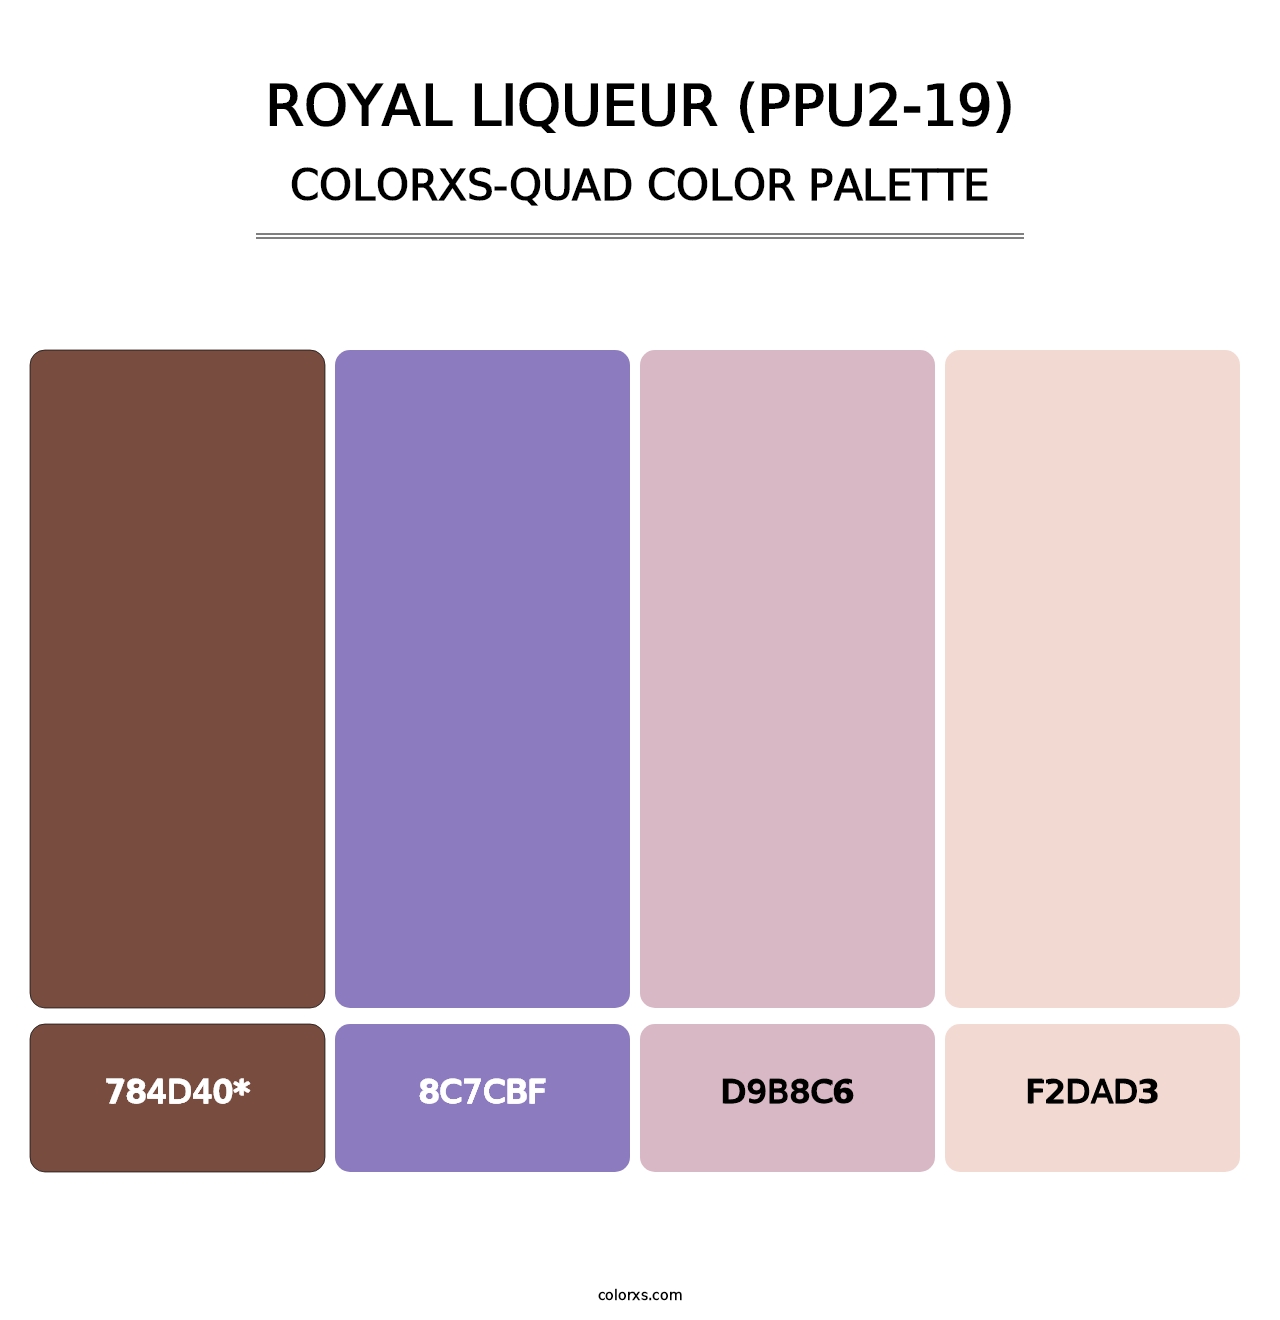 Royal Liqueur (PPU2-19) - Colorxs Quad Palette